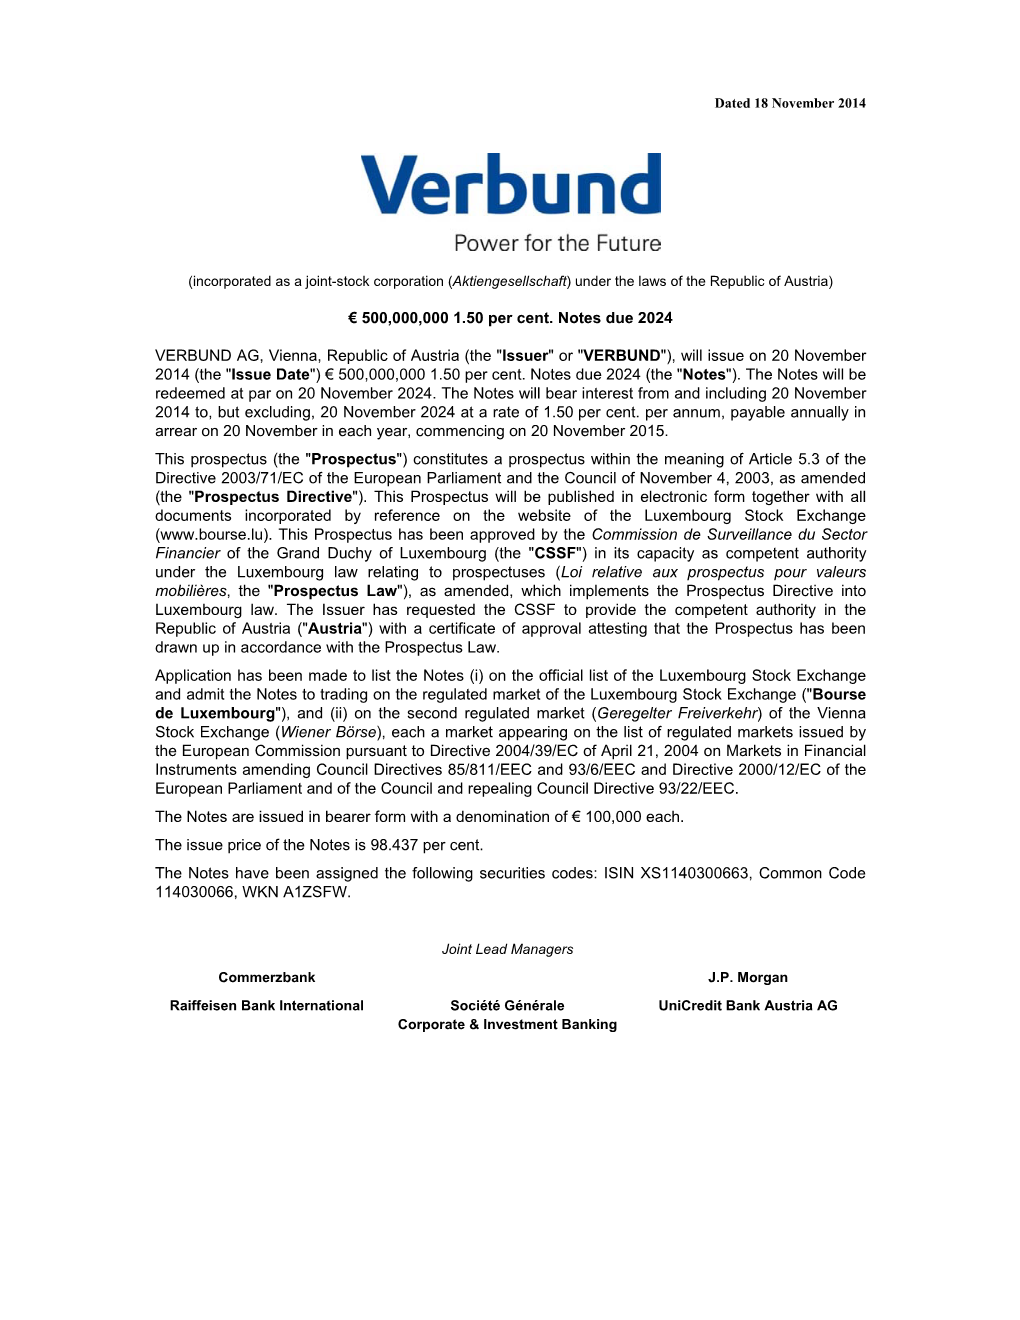 VERBUND AG, Vienna, Republic of Austria (The "Issuer" Or "VERBUND"), Will Issue on 20 November 2014 (The "Issue Date") € 500,000,000 1.50 Per Cent